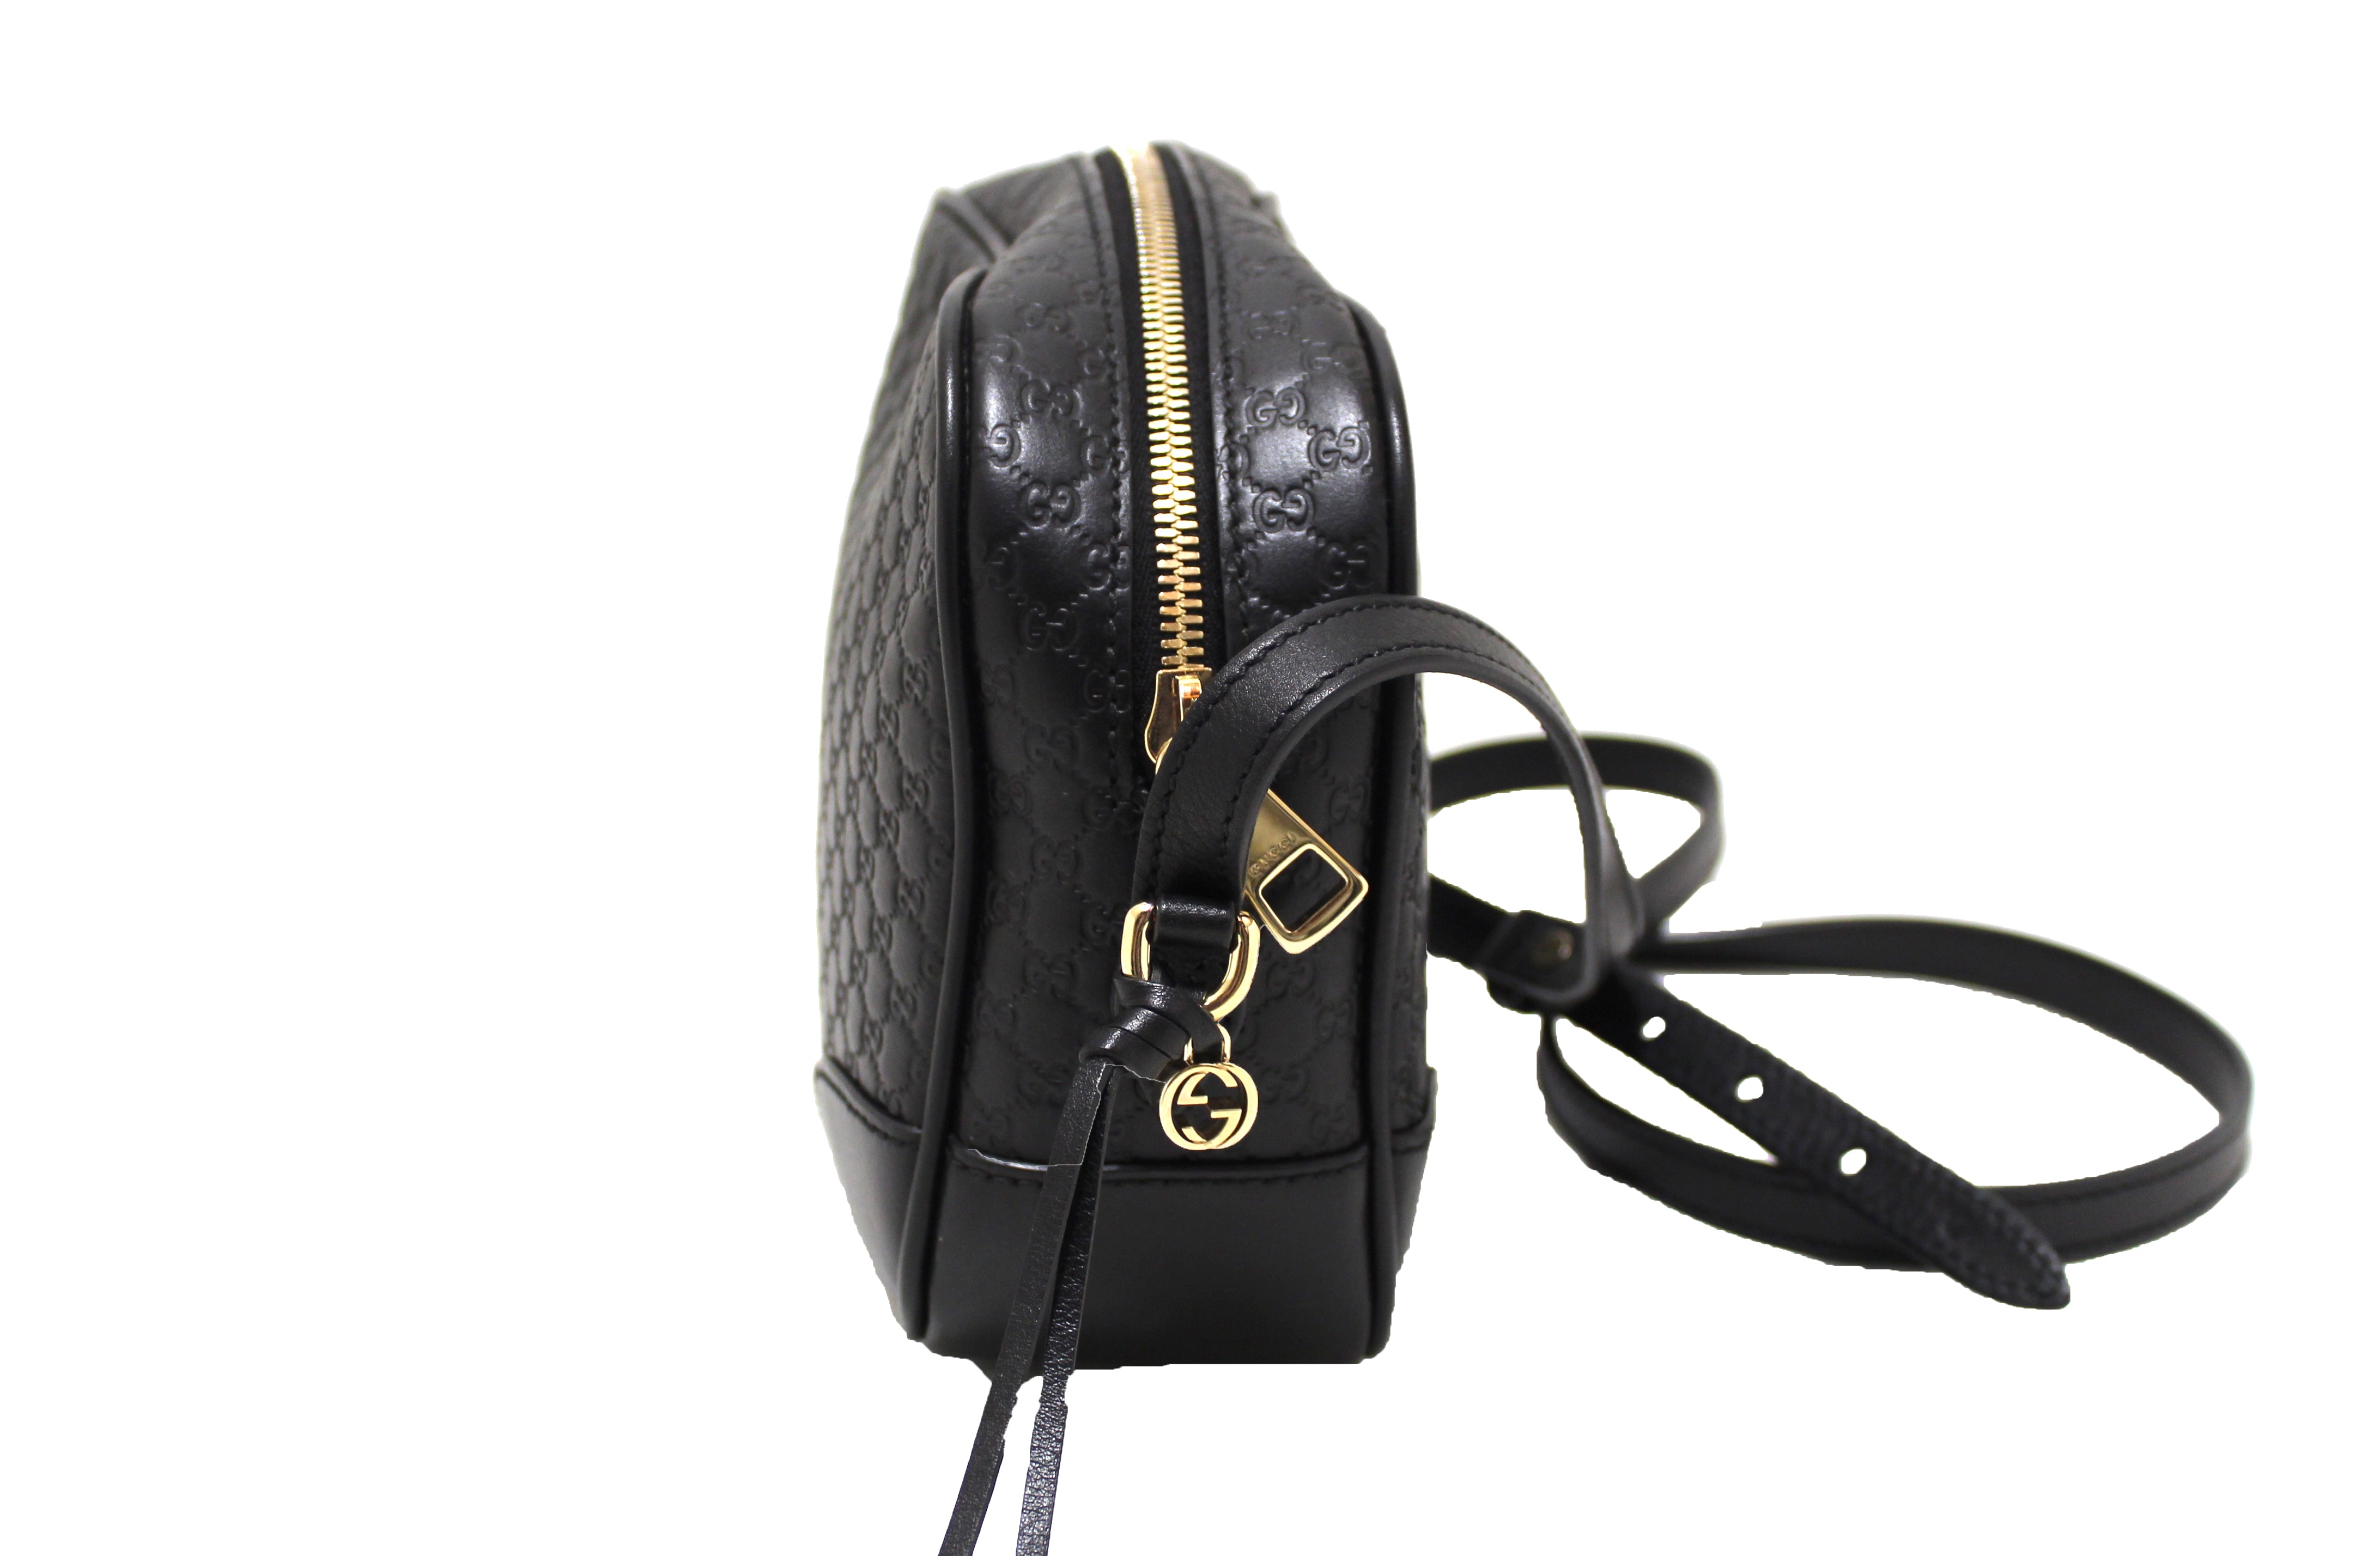 Authentic Black Gucci GG MicroGuccissima Leather Bree Crossbody Bag